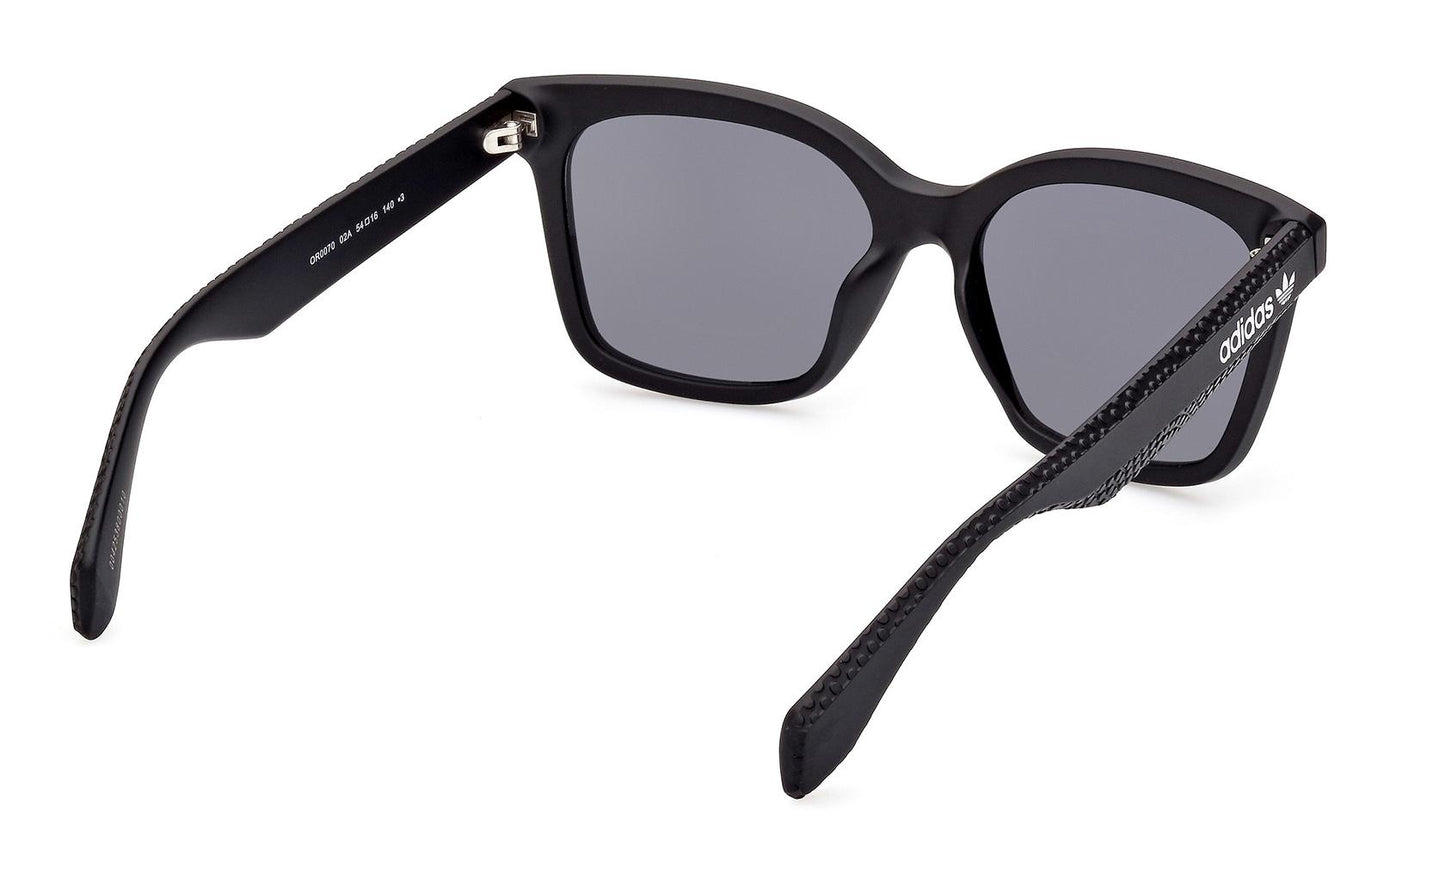 Adidas Originals Sunglasses OR0070 02A